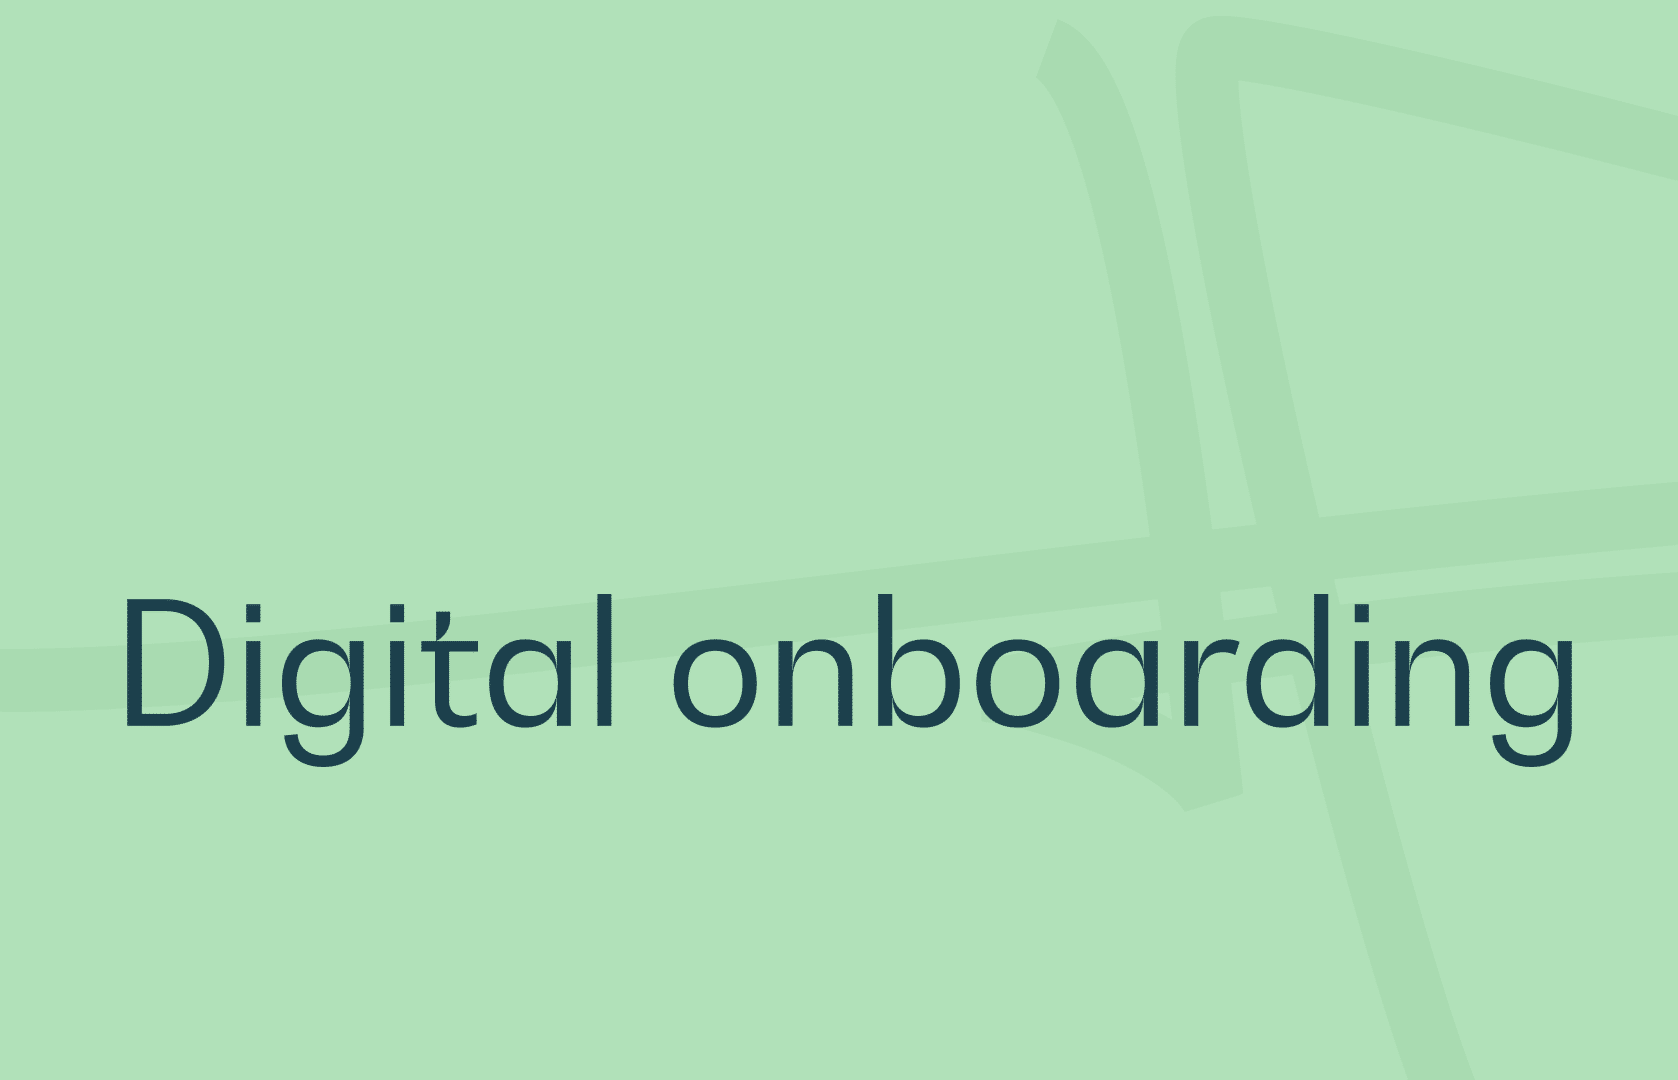 digital onboarding definition